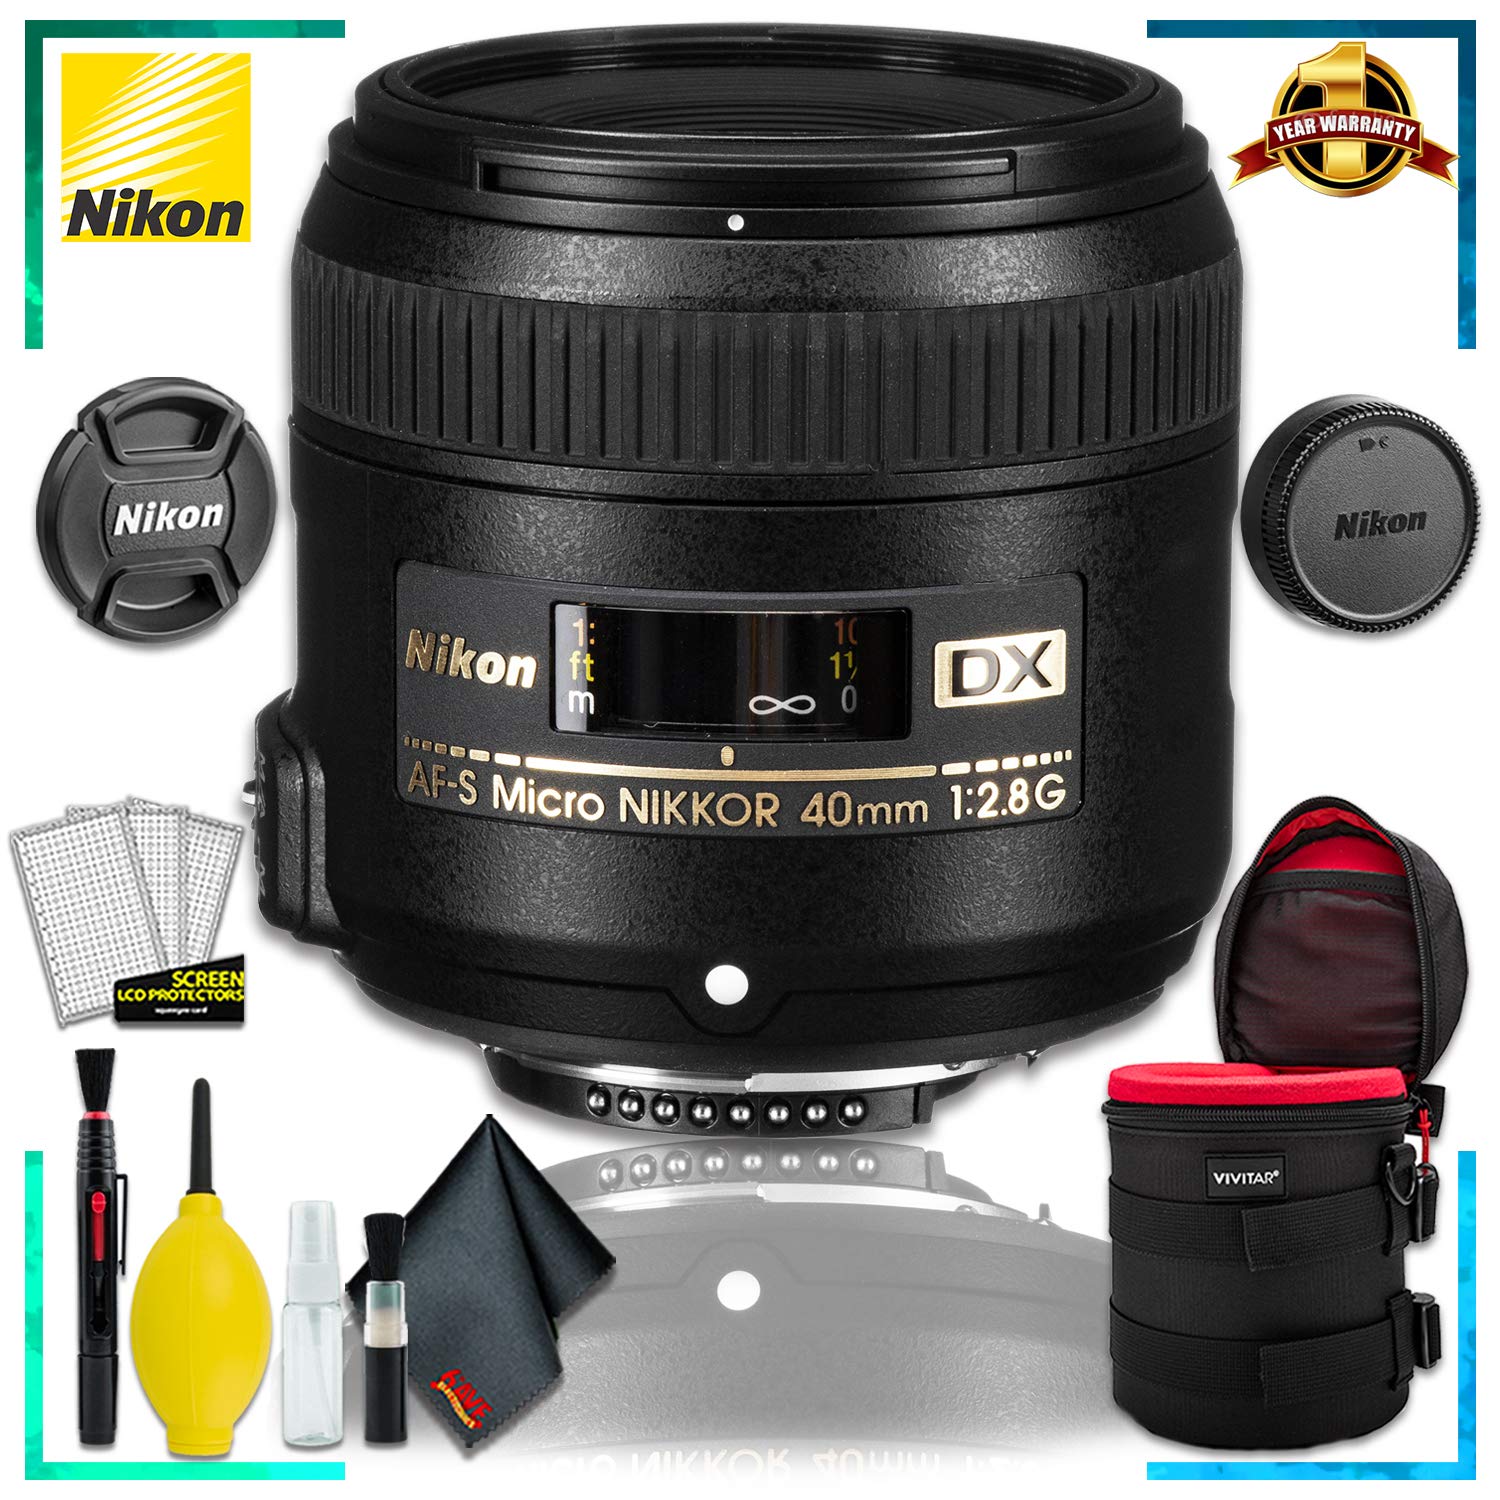 Nikon AF-S DX Micro NIKKOR 40mm F.2.8G Lens (International Model) + 4.5 inch Vivitar Premium Lens Case + Cleaning Kit